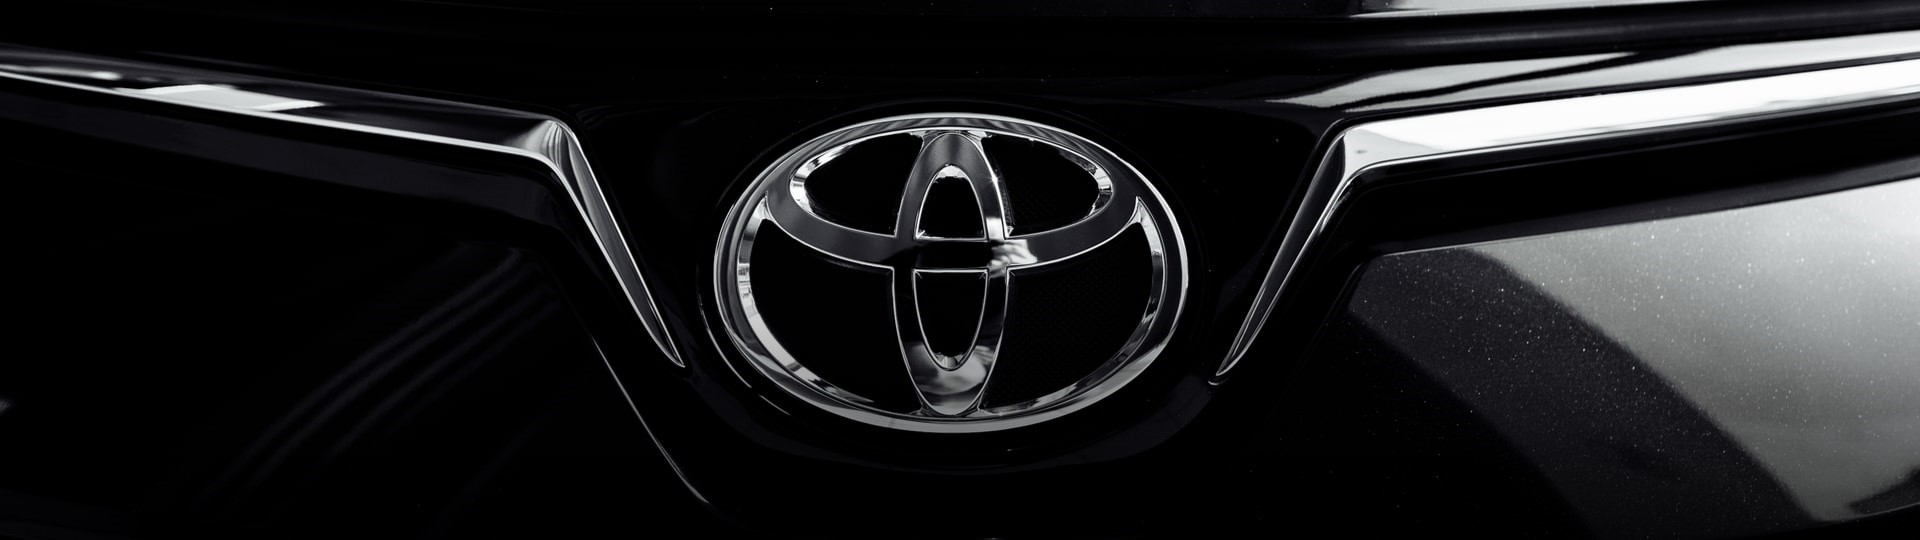 Toyota v pololetí zůstala největší automobilkou podle počtu prodaných aut